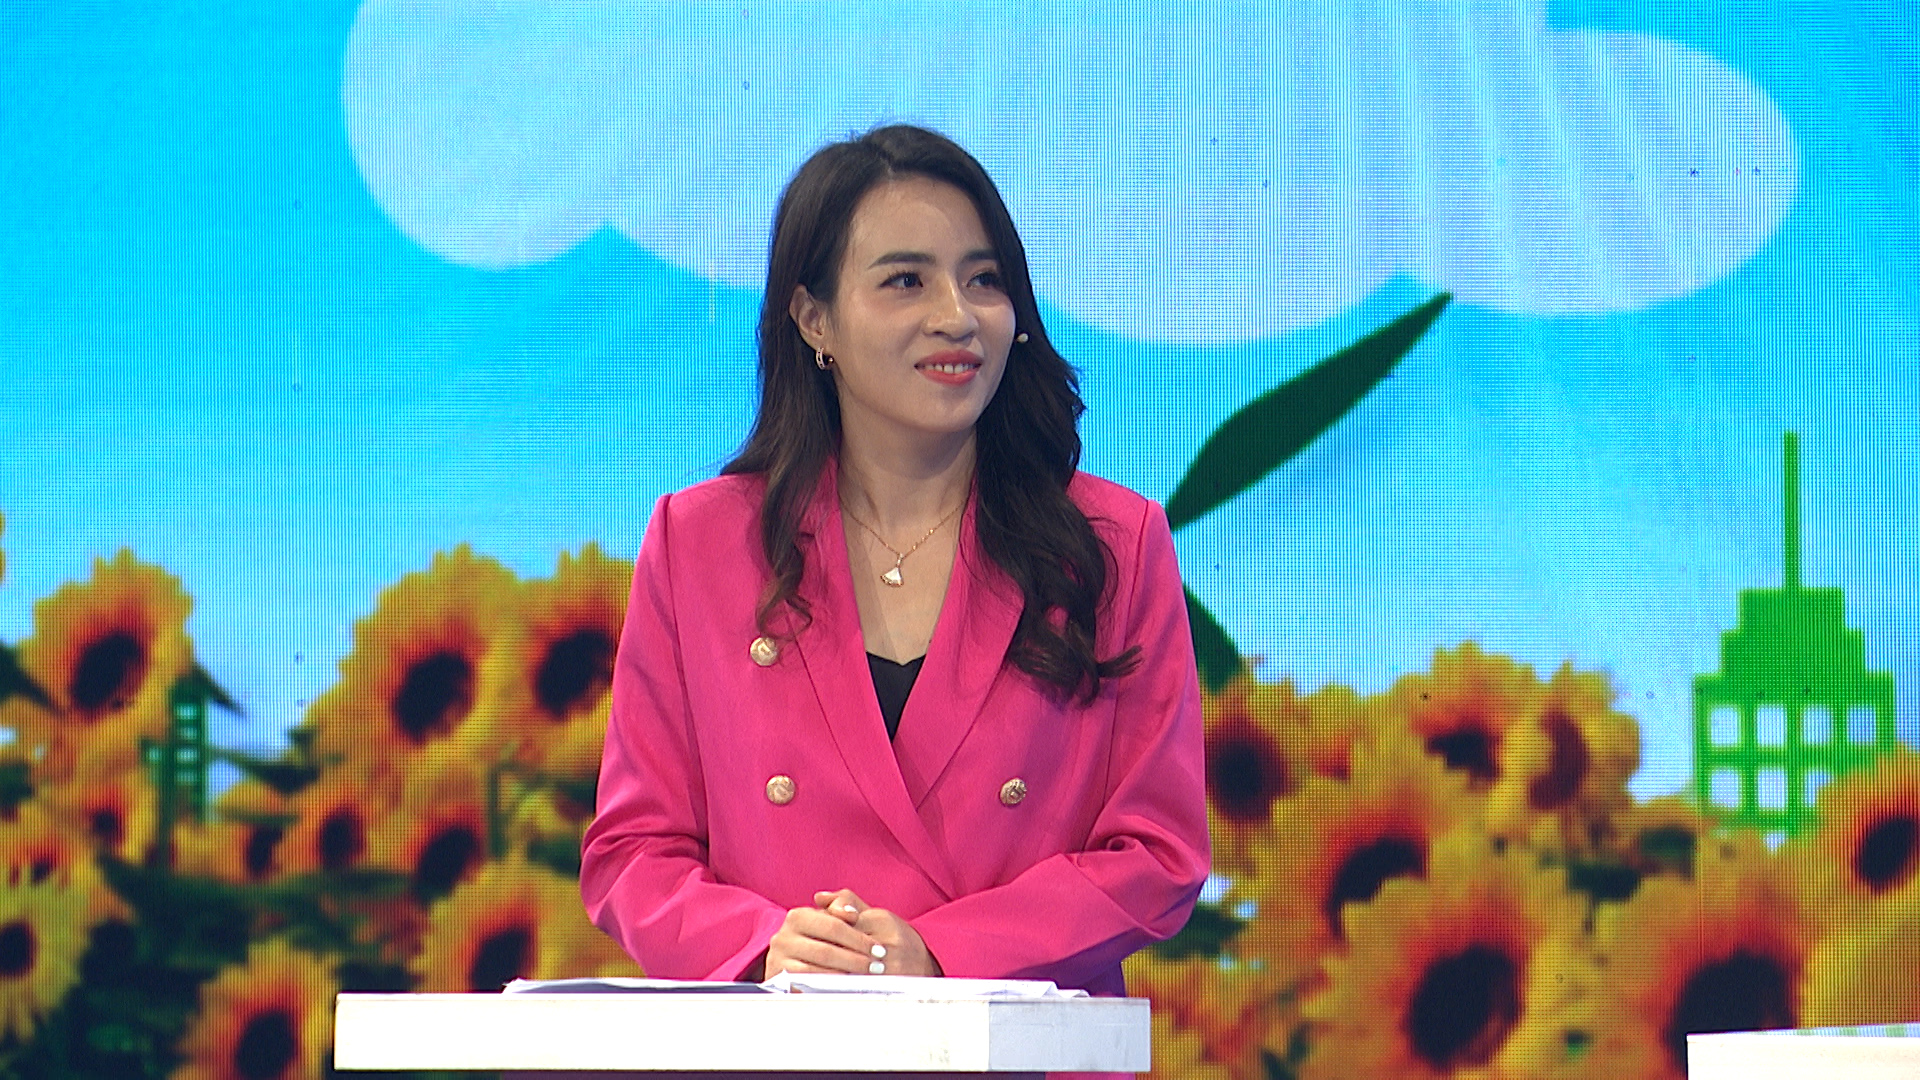 Bà Trần Thị Như Trang, Chủ tịch Hội đồng quản lý Quỹ Vì Tầm vóc Việt: “Trồng một cái cây không thể ngày 1 ngày 2 là có quả, cũng như sự bền bỉ của Quỹ 10 năm qua chính là để hướng đến một môi trường sống lành mạnh cho những đứa trẻ hạnh phúc”